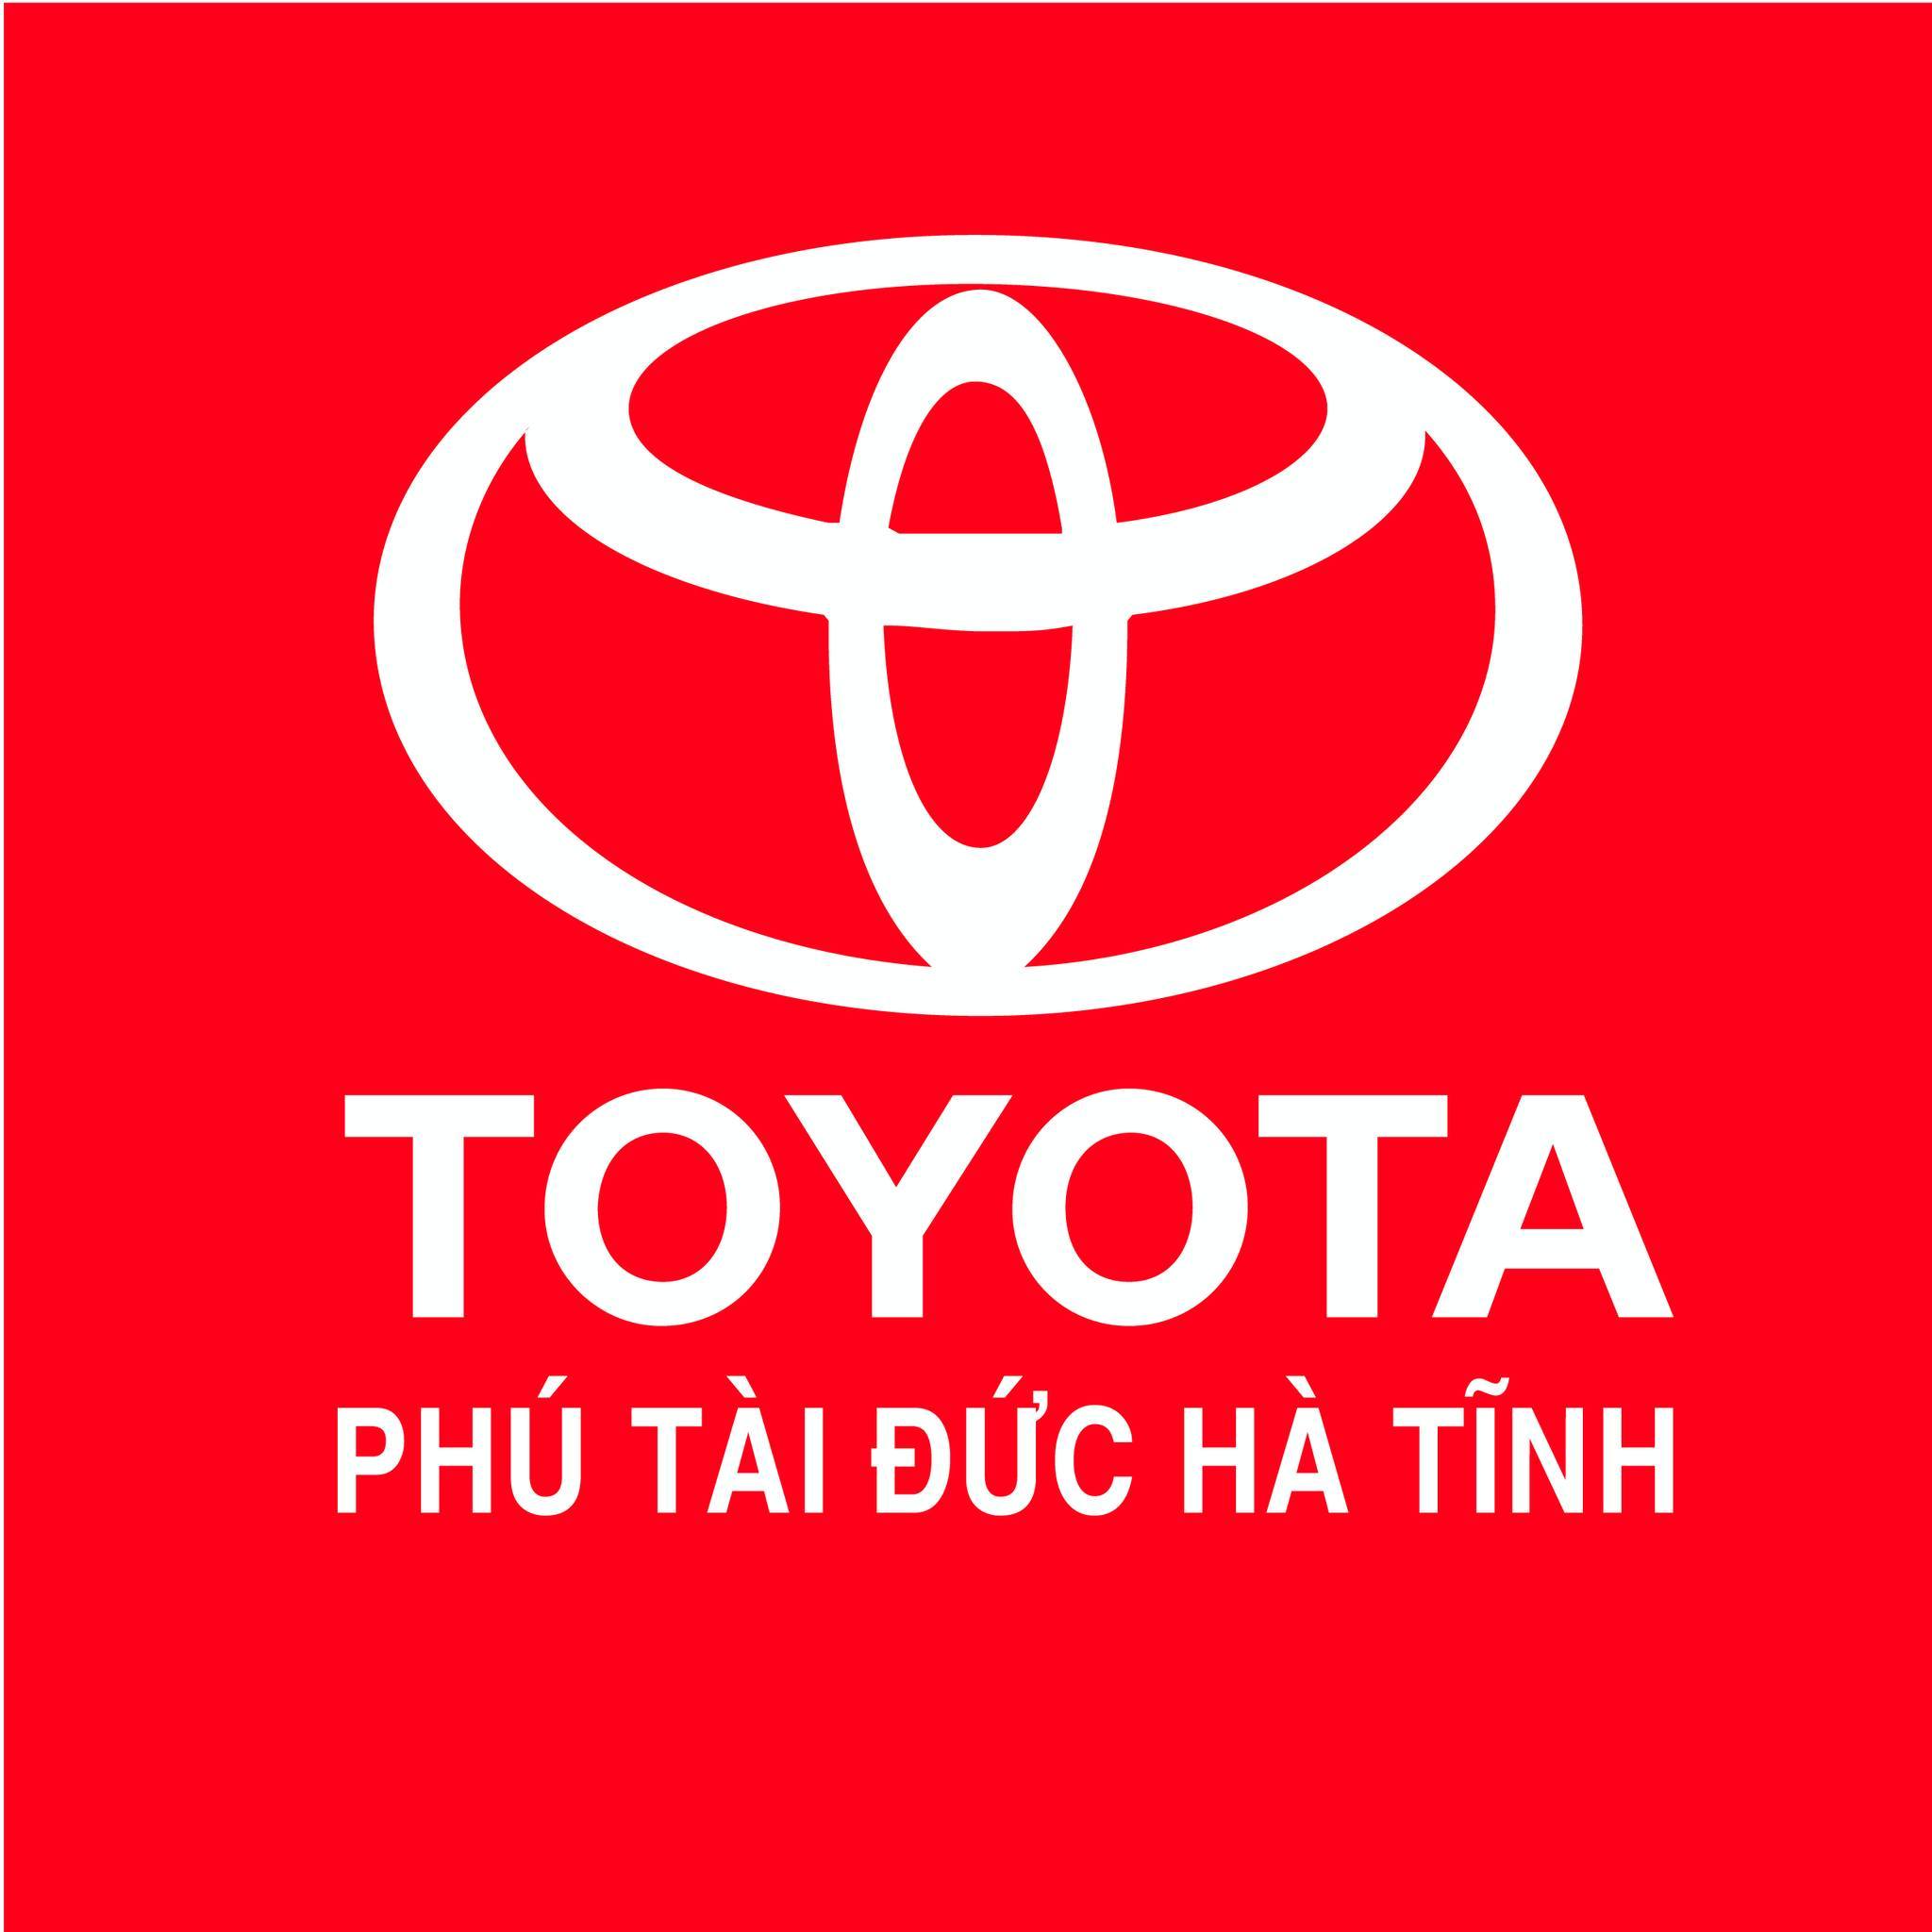 TOYOTA PHÚ TÀI ĐỨC HÀ TĨNH: THƯƠNG 0856465588 - Cập nhật bảng giá xe Toyota mới nhất tại Việt Nam & giá xe ô tô Toyota Vios, Corolla Altis, Camry, Yaris, Innova, Wigo, Fortuner Land Cruiser, Hilux, Hiace